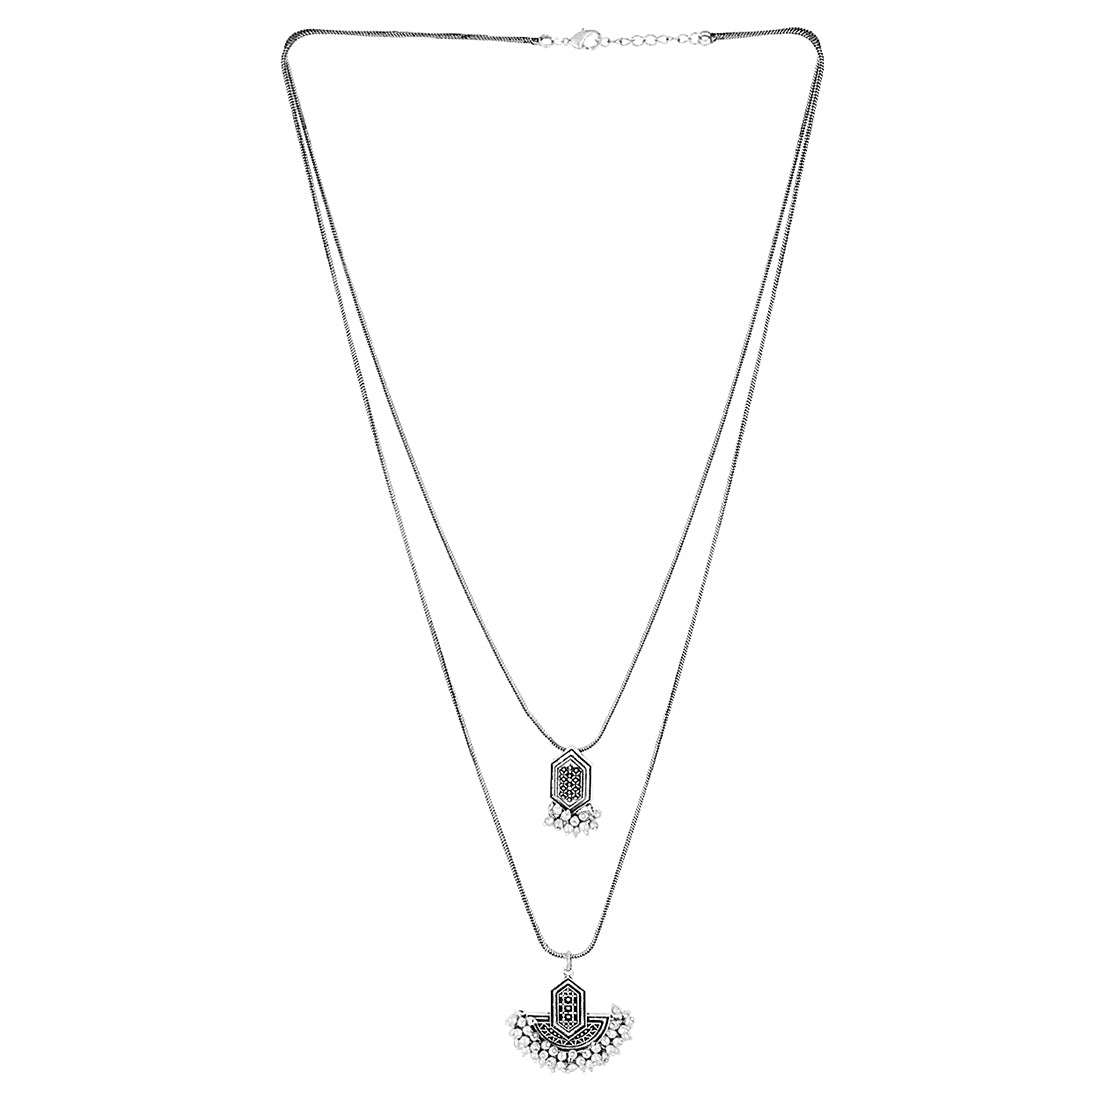 Leela Pearl Beauty Necklace